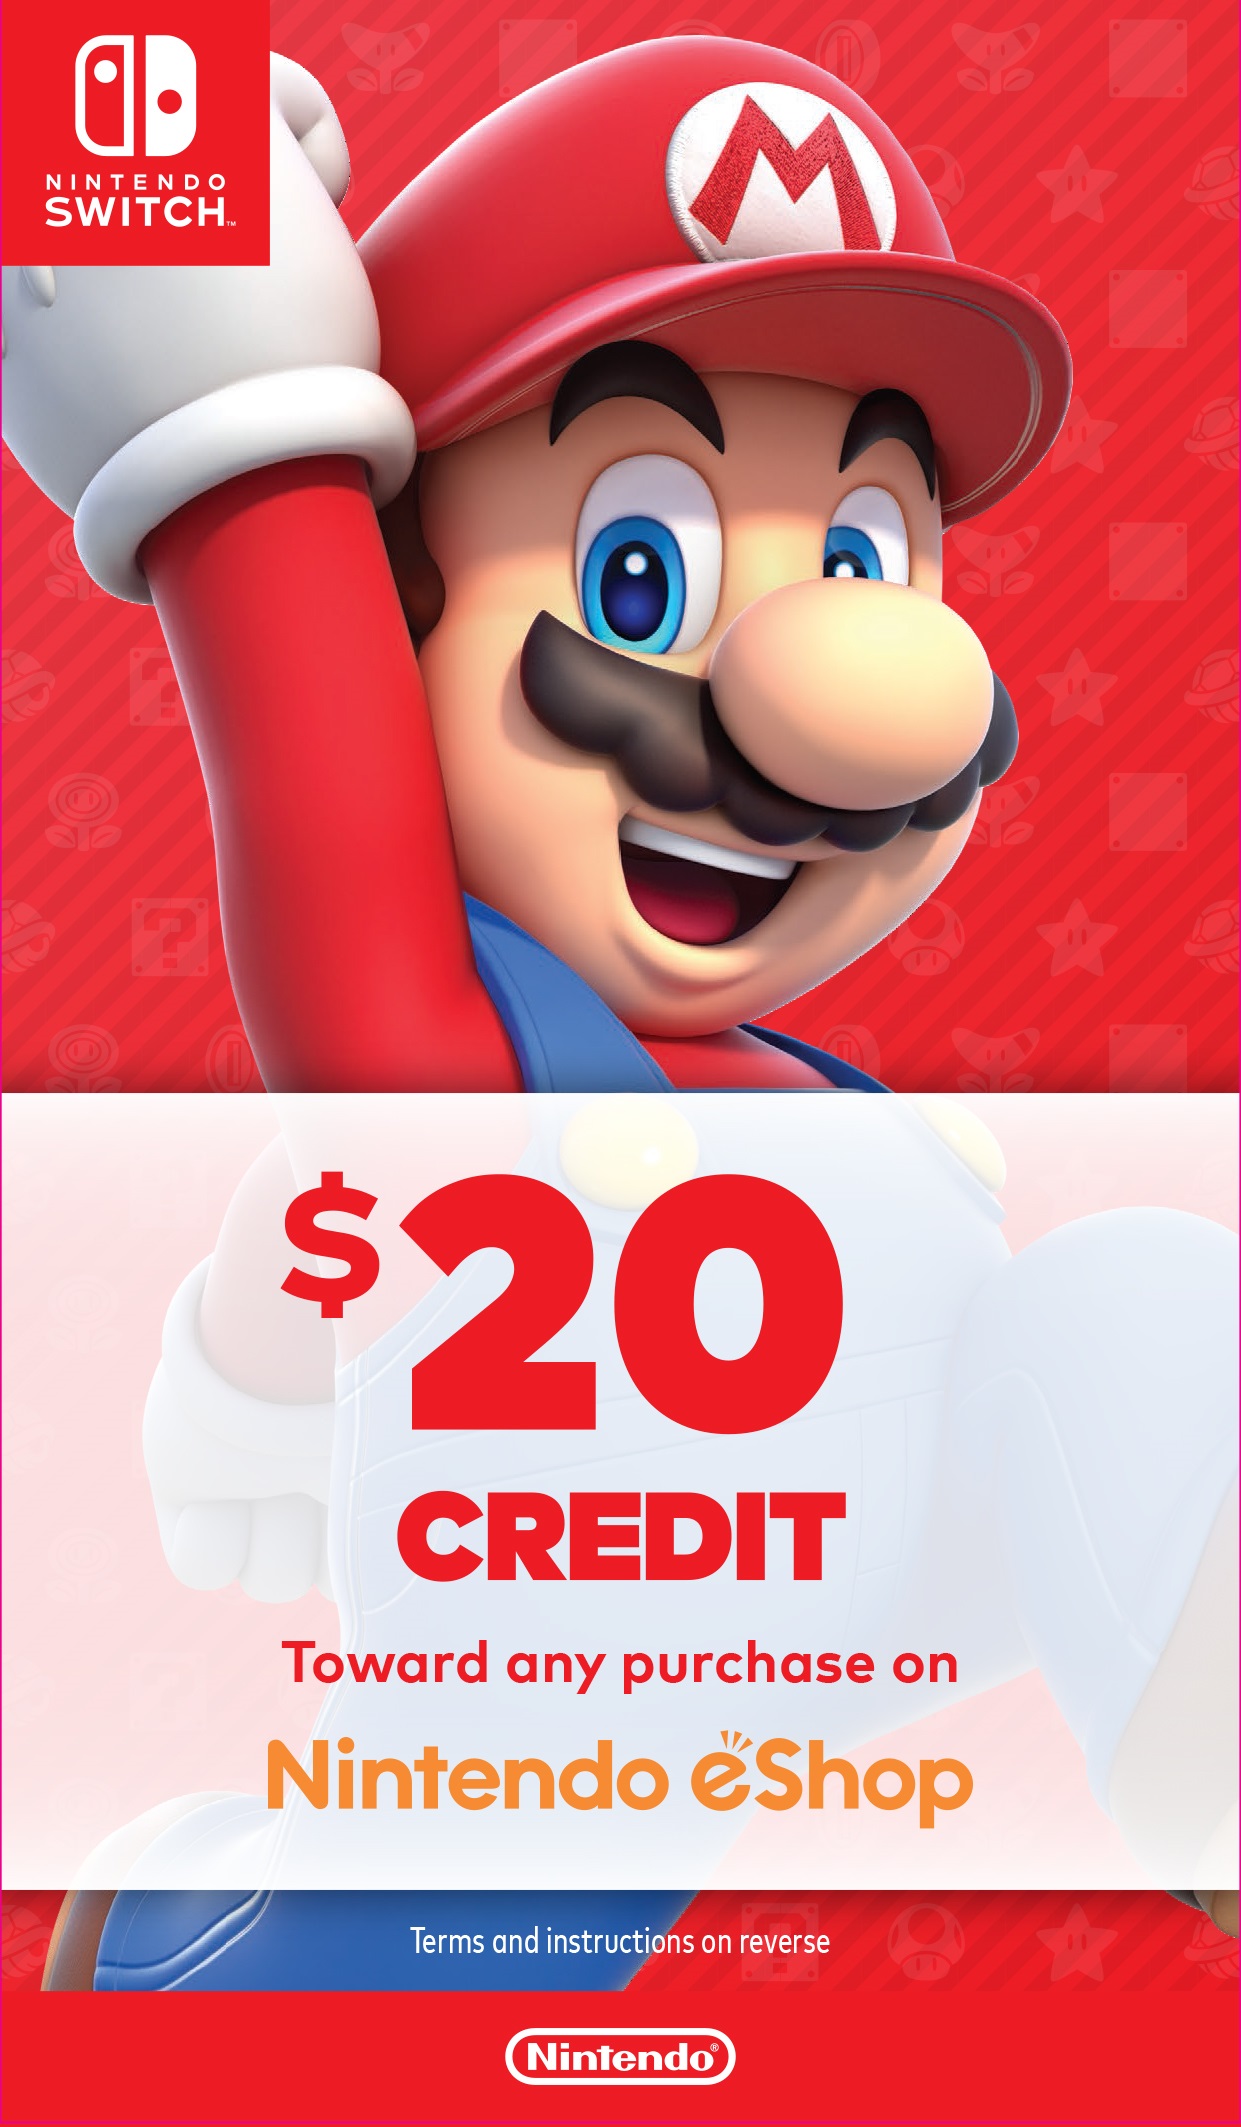 Nintendo Switch Bundle with Mario Red Joy-Con, $20 Nintendo eShop Credit, & Carrying Case - image 4 of 9